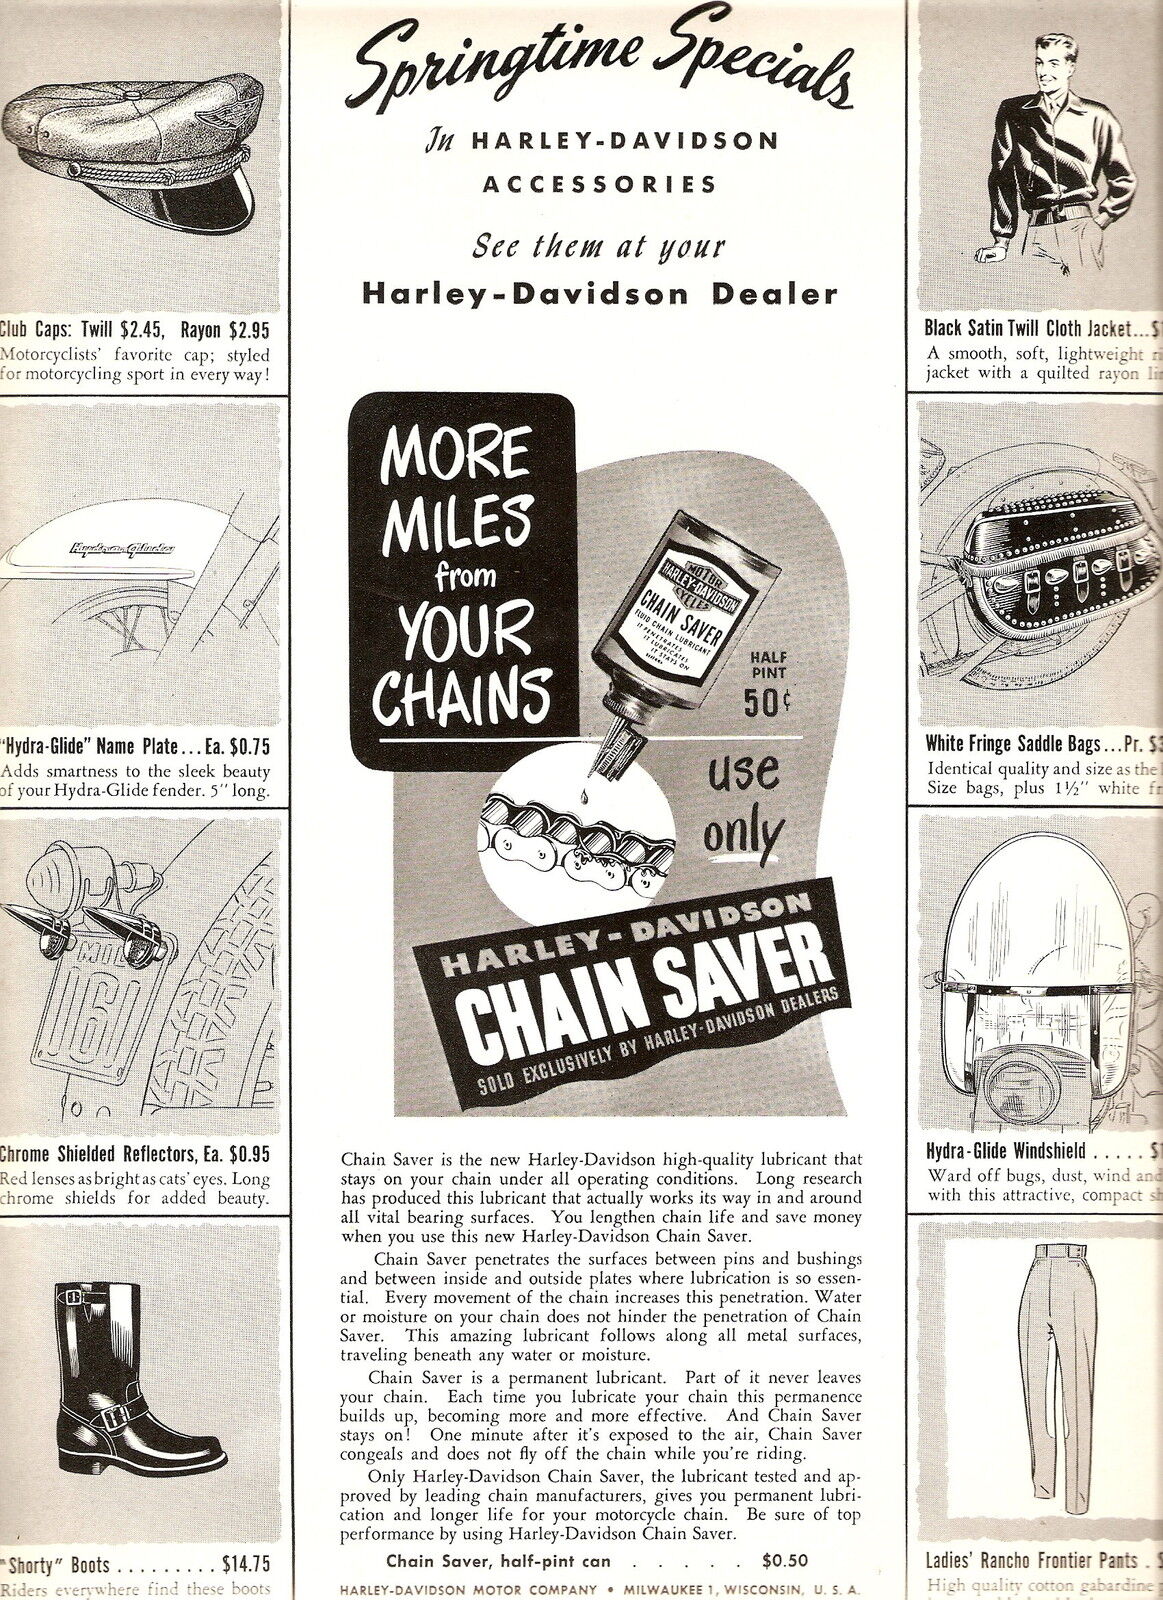 1950 - Catálogo de accesorios de Harley-Davidson